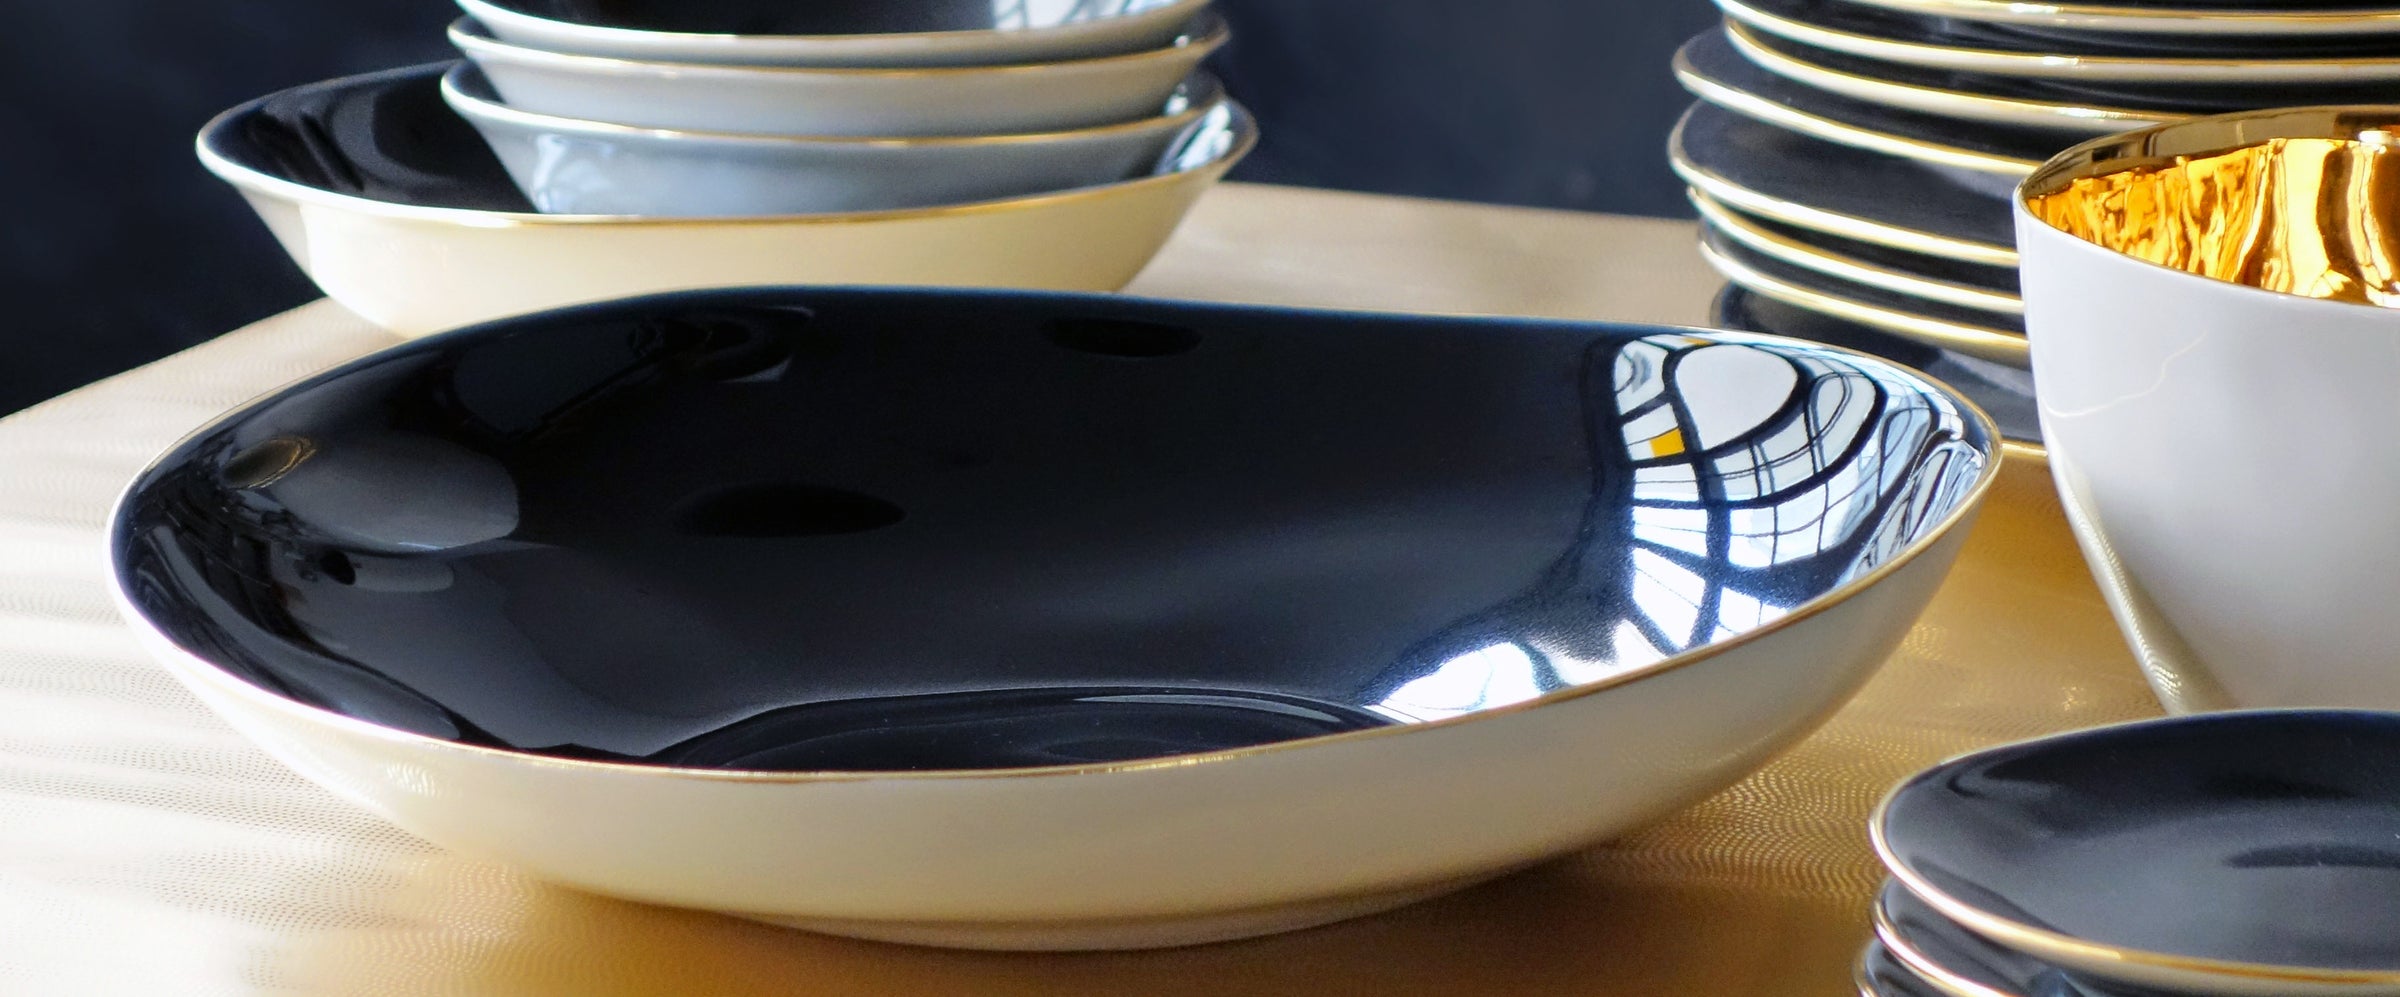 grand plat en porcelaine avec email noir bleuté à l'intérieur